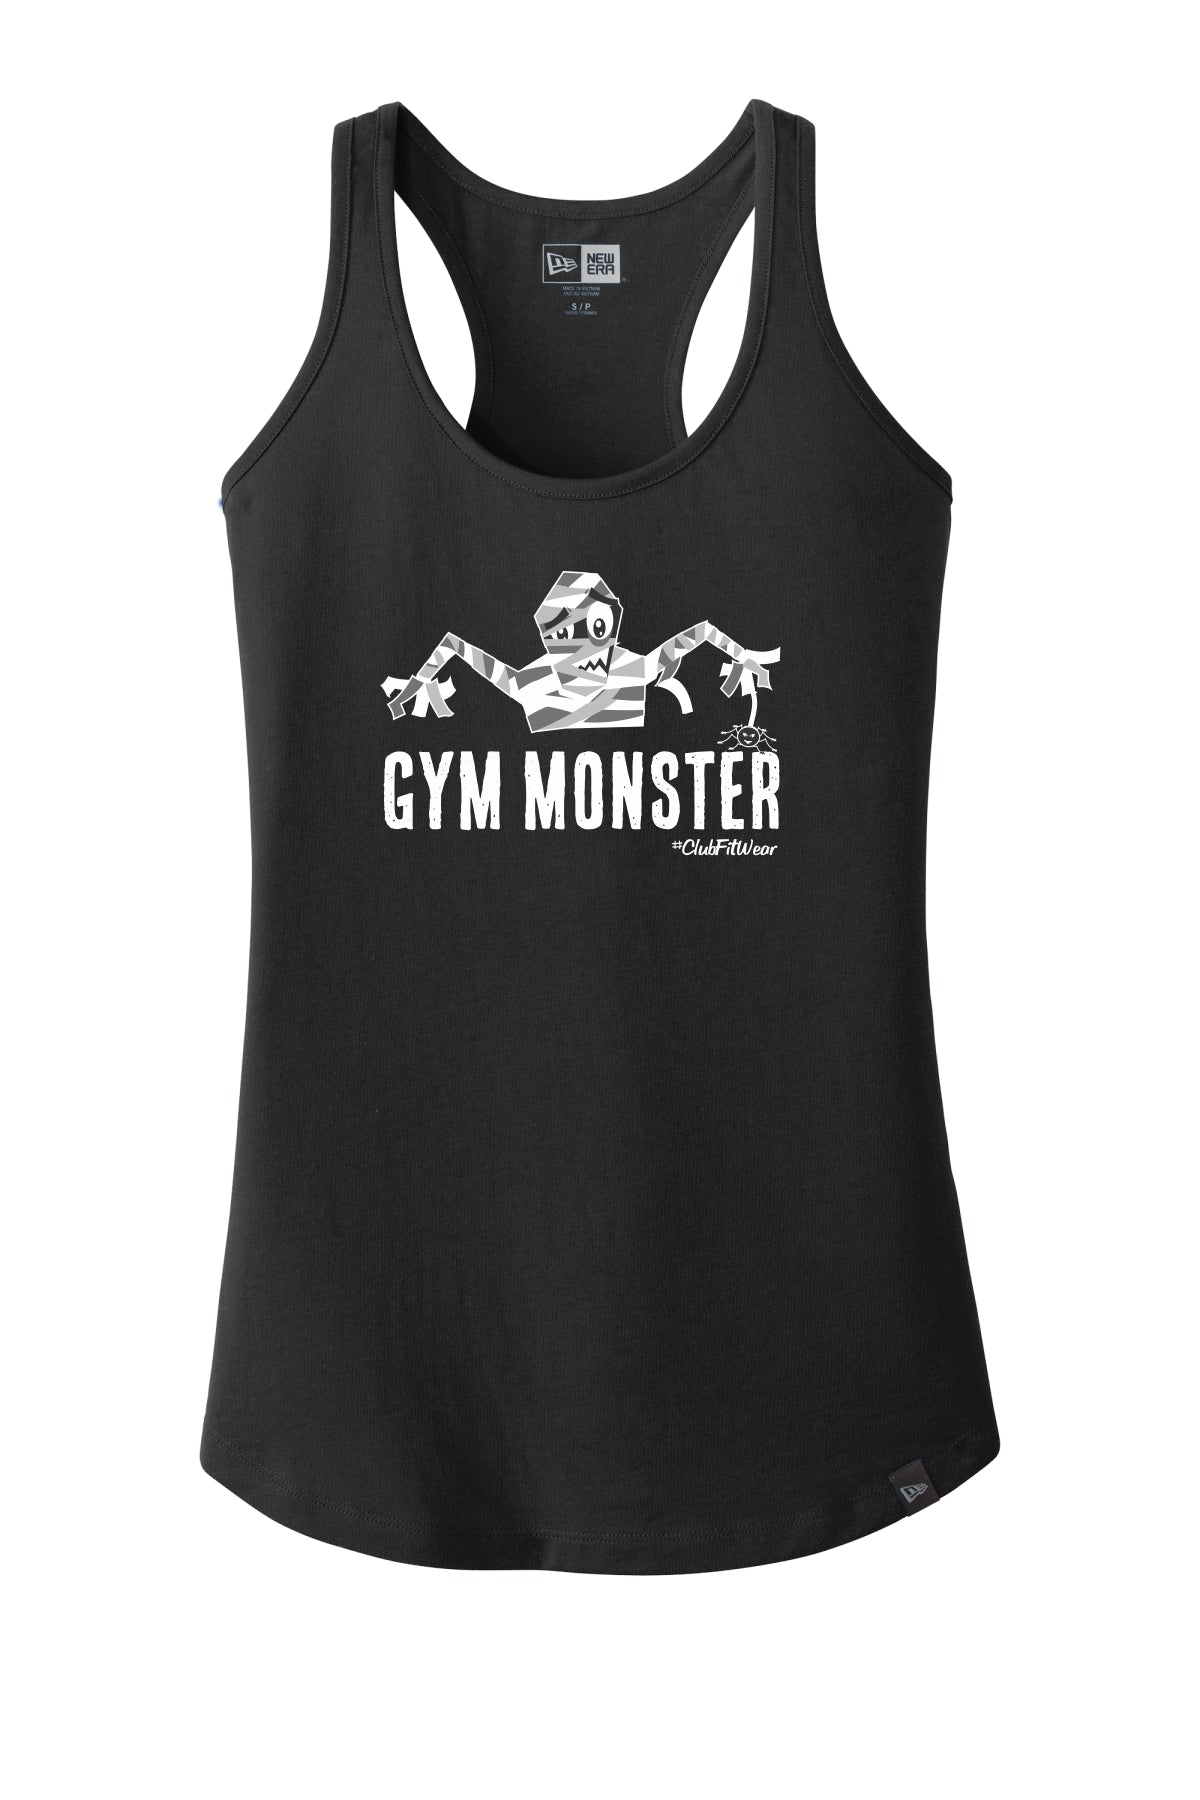 Gym Monster - Mummy